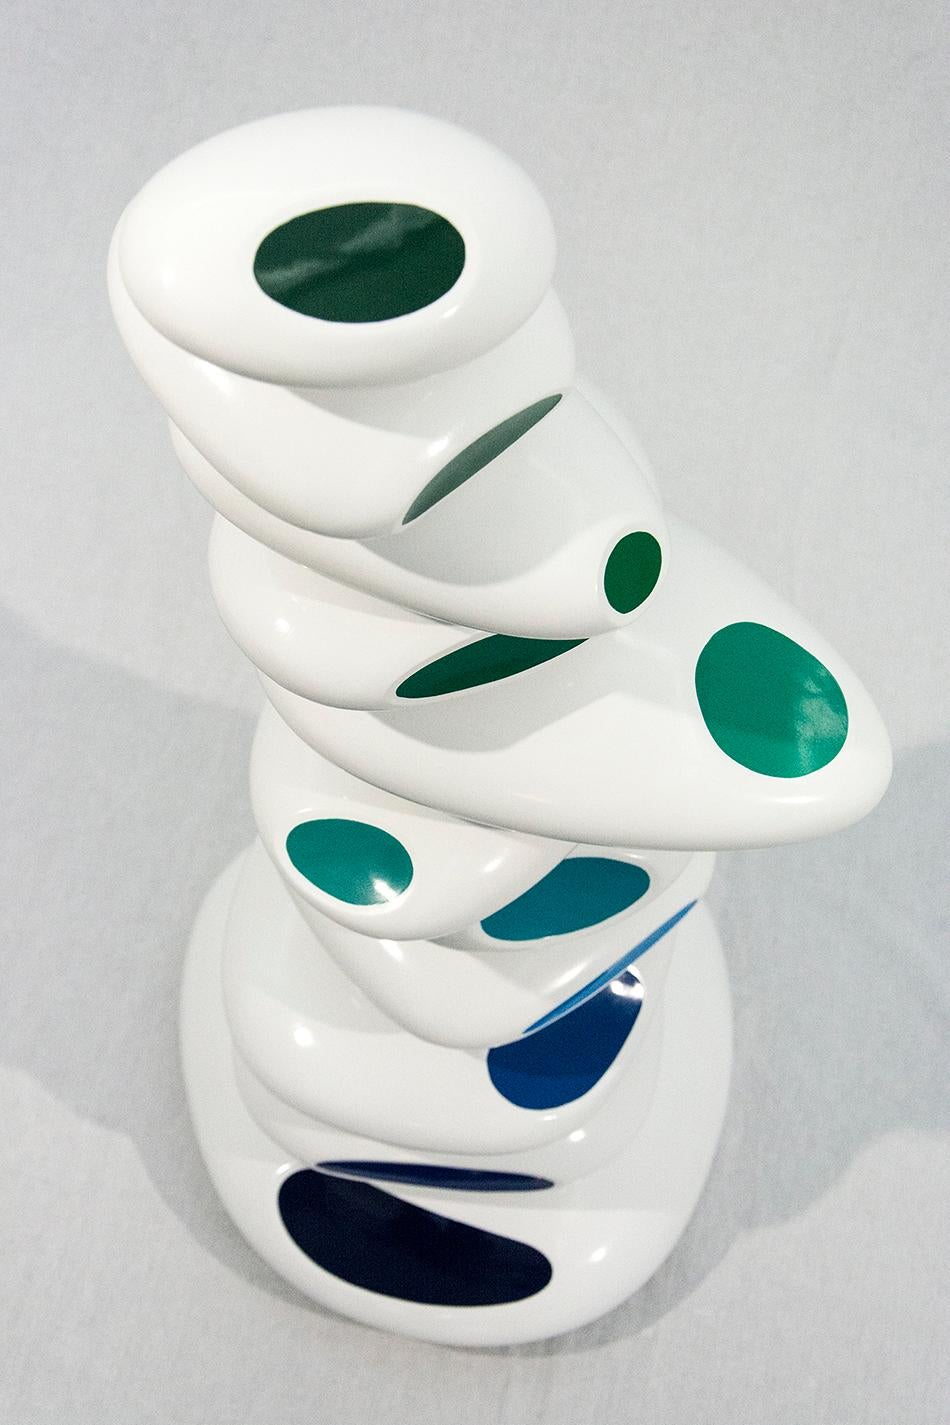 Der israelische Bildhauer Benny Katz schafft mit seinen übereinander gestapelten, glänzenden Ovalen in Weiß mit blauen und grünen Akzenten die spielerische Essenz einer Meereswelle.  Dieses Werk ist die Nummer 2 in einer Auflage von 9 Stück und